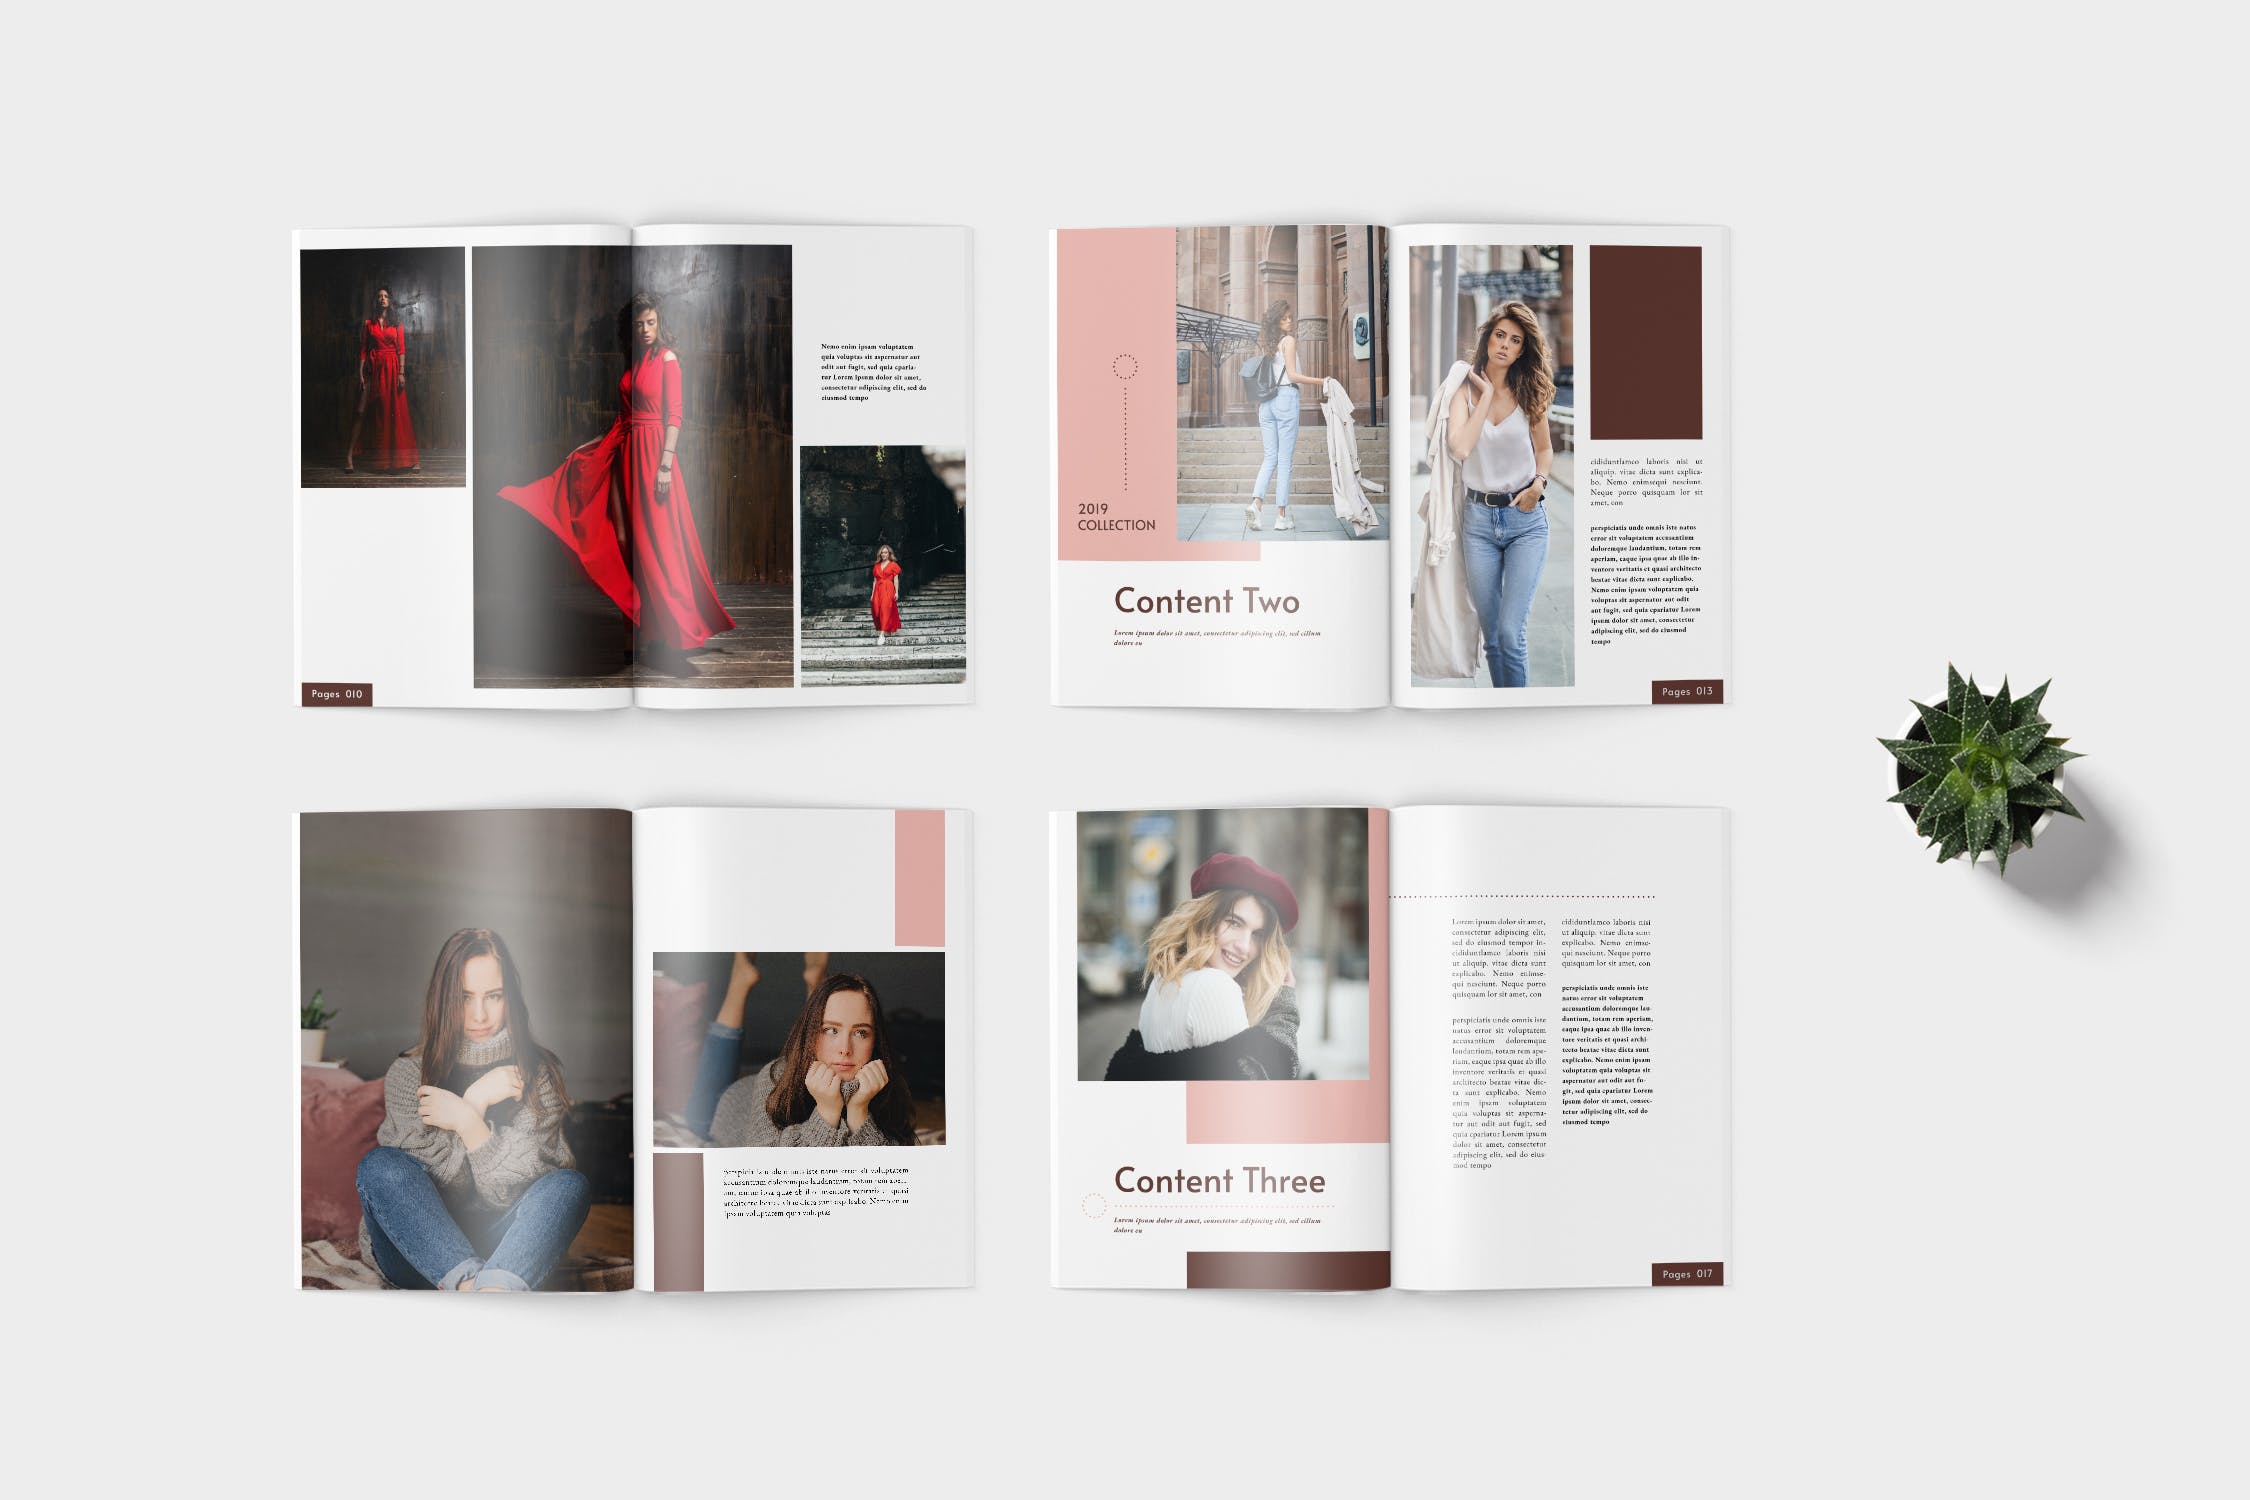 时装产品大洋岛精选目录设计模板 Elana Fashion Lookbook Catalogue插图3